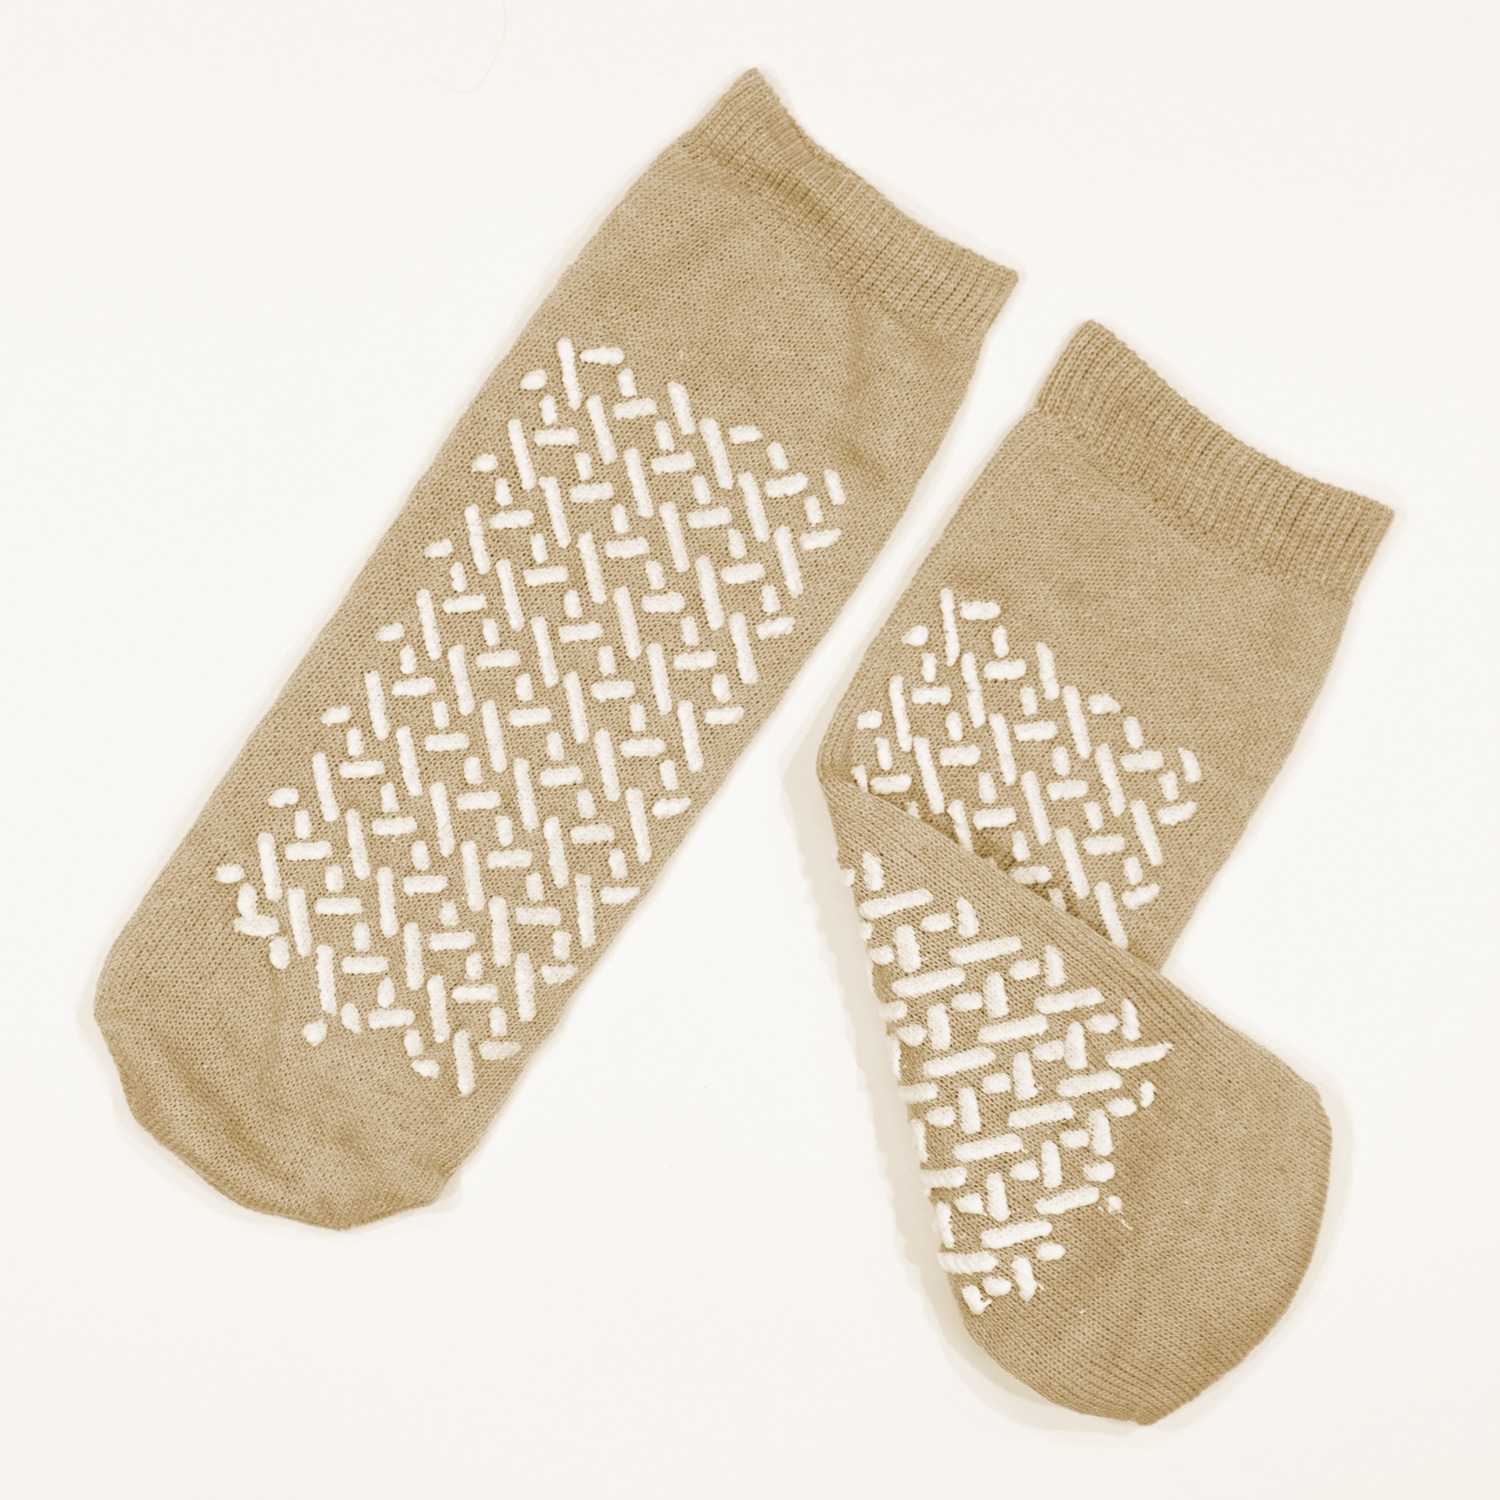 Double Sided Slipper Socks, Non Skid Hospital Travel Slipper Socks XL,  Beige #2193 - BM Global Supply Corporation